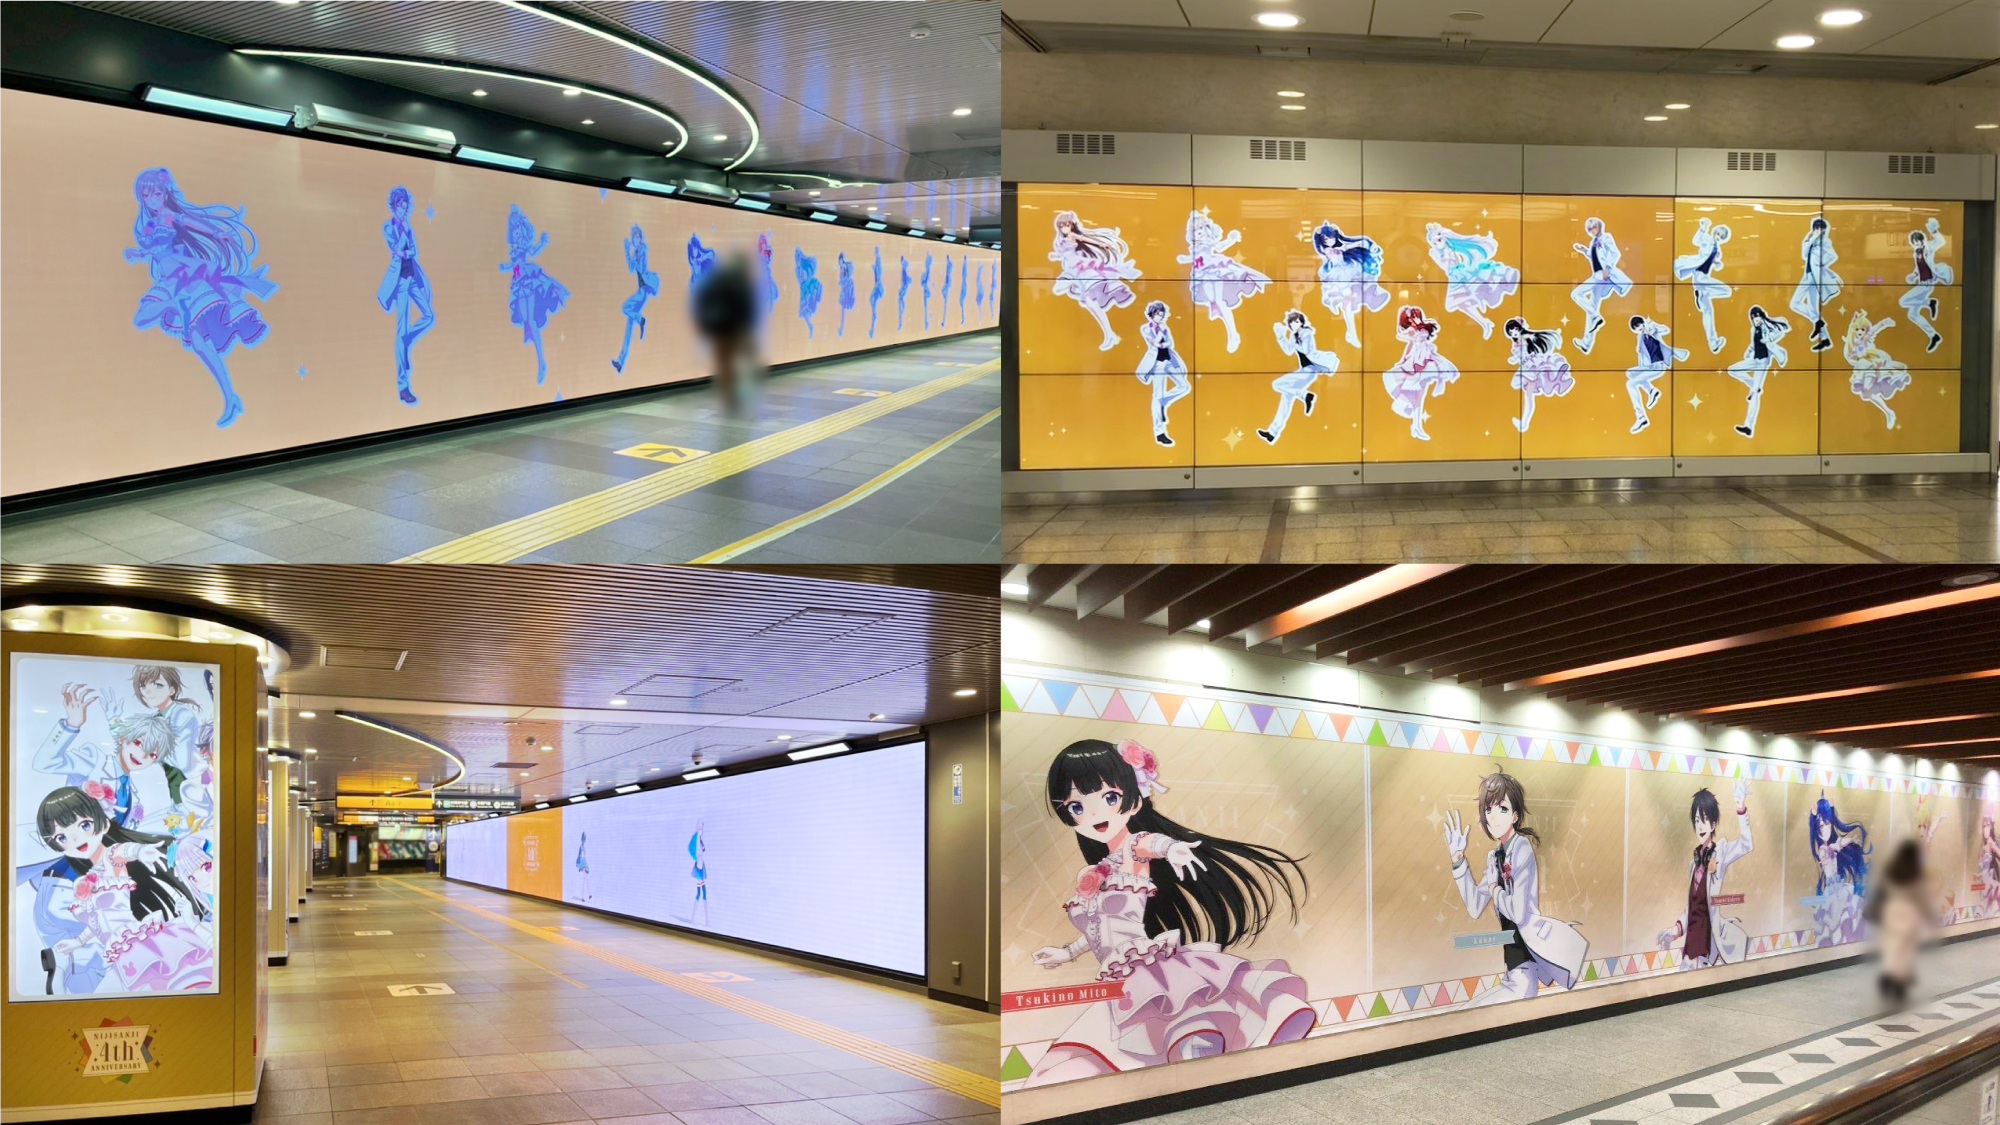 にじさんじ4周年を記念した駅広告が東京 大阪 愛知 北海道の4駅に登場 Moshi Moshi Nippon もしもしにっぽん